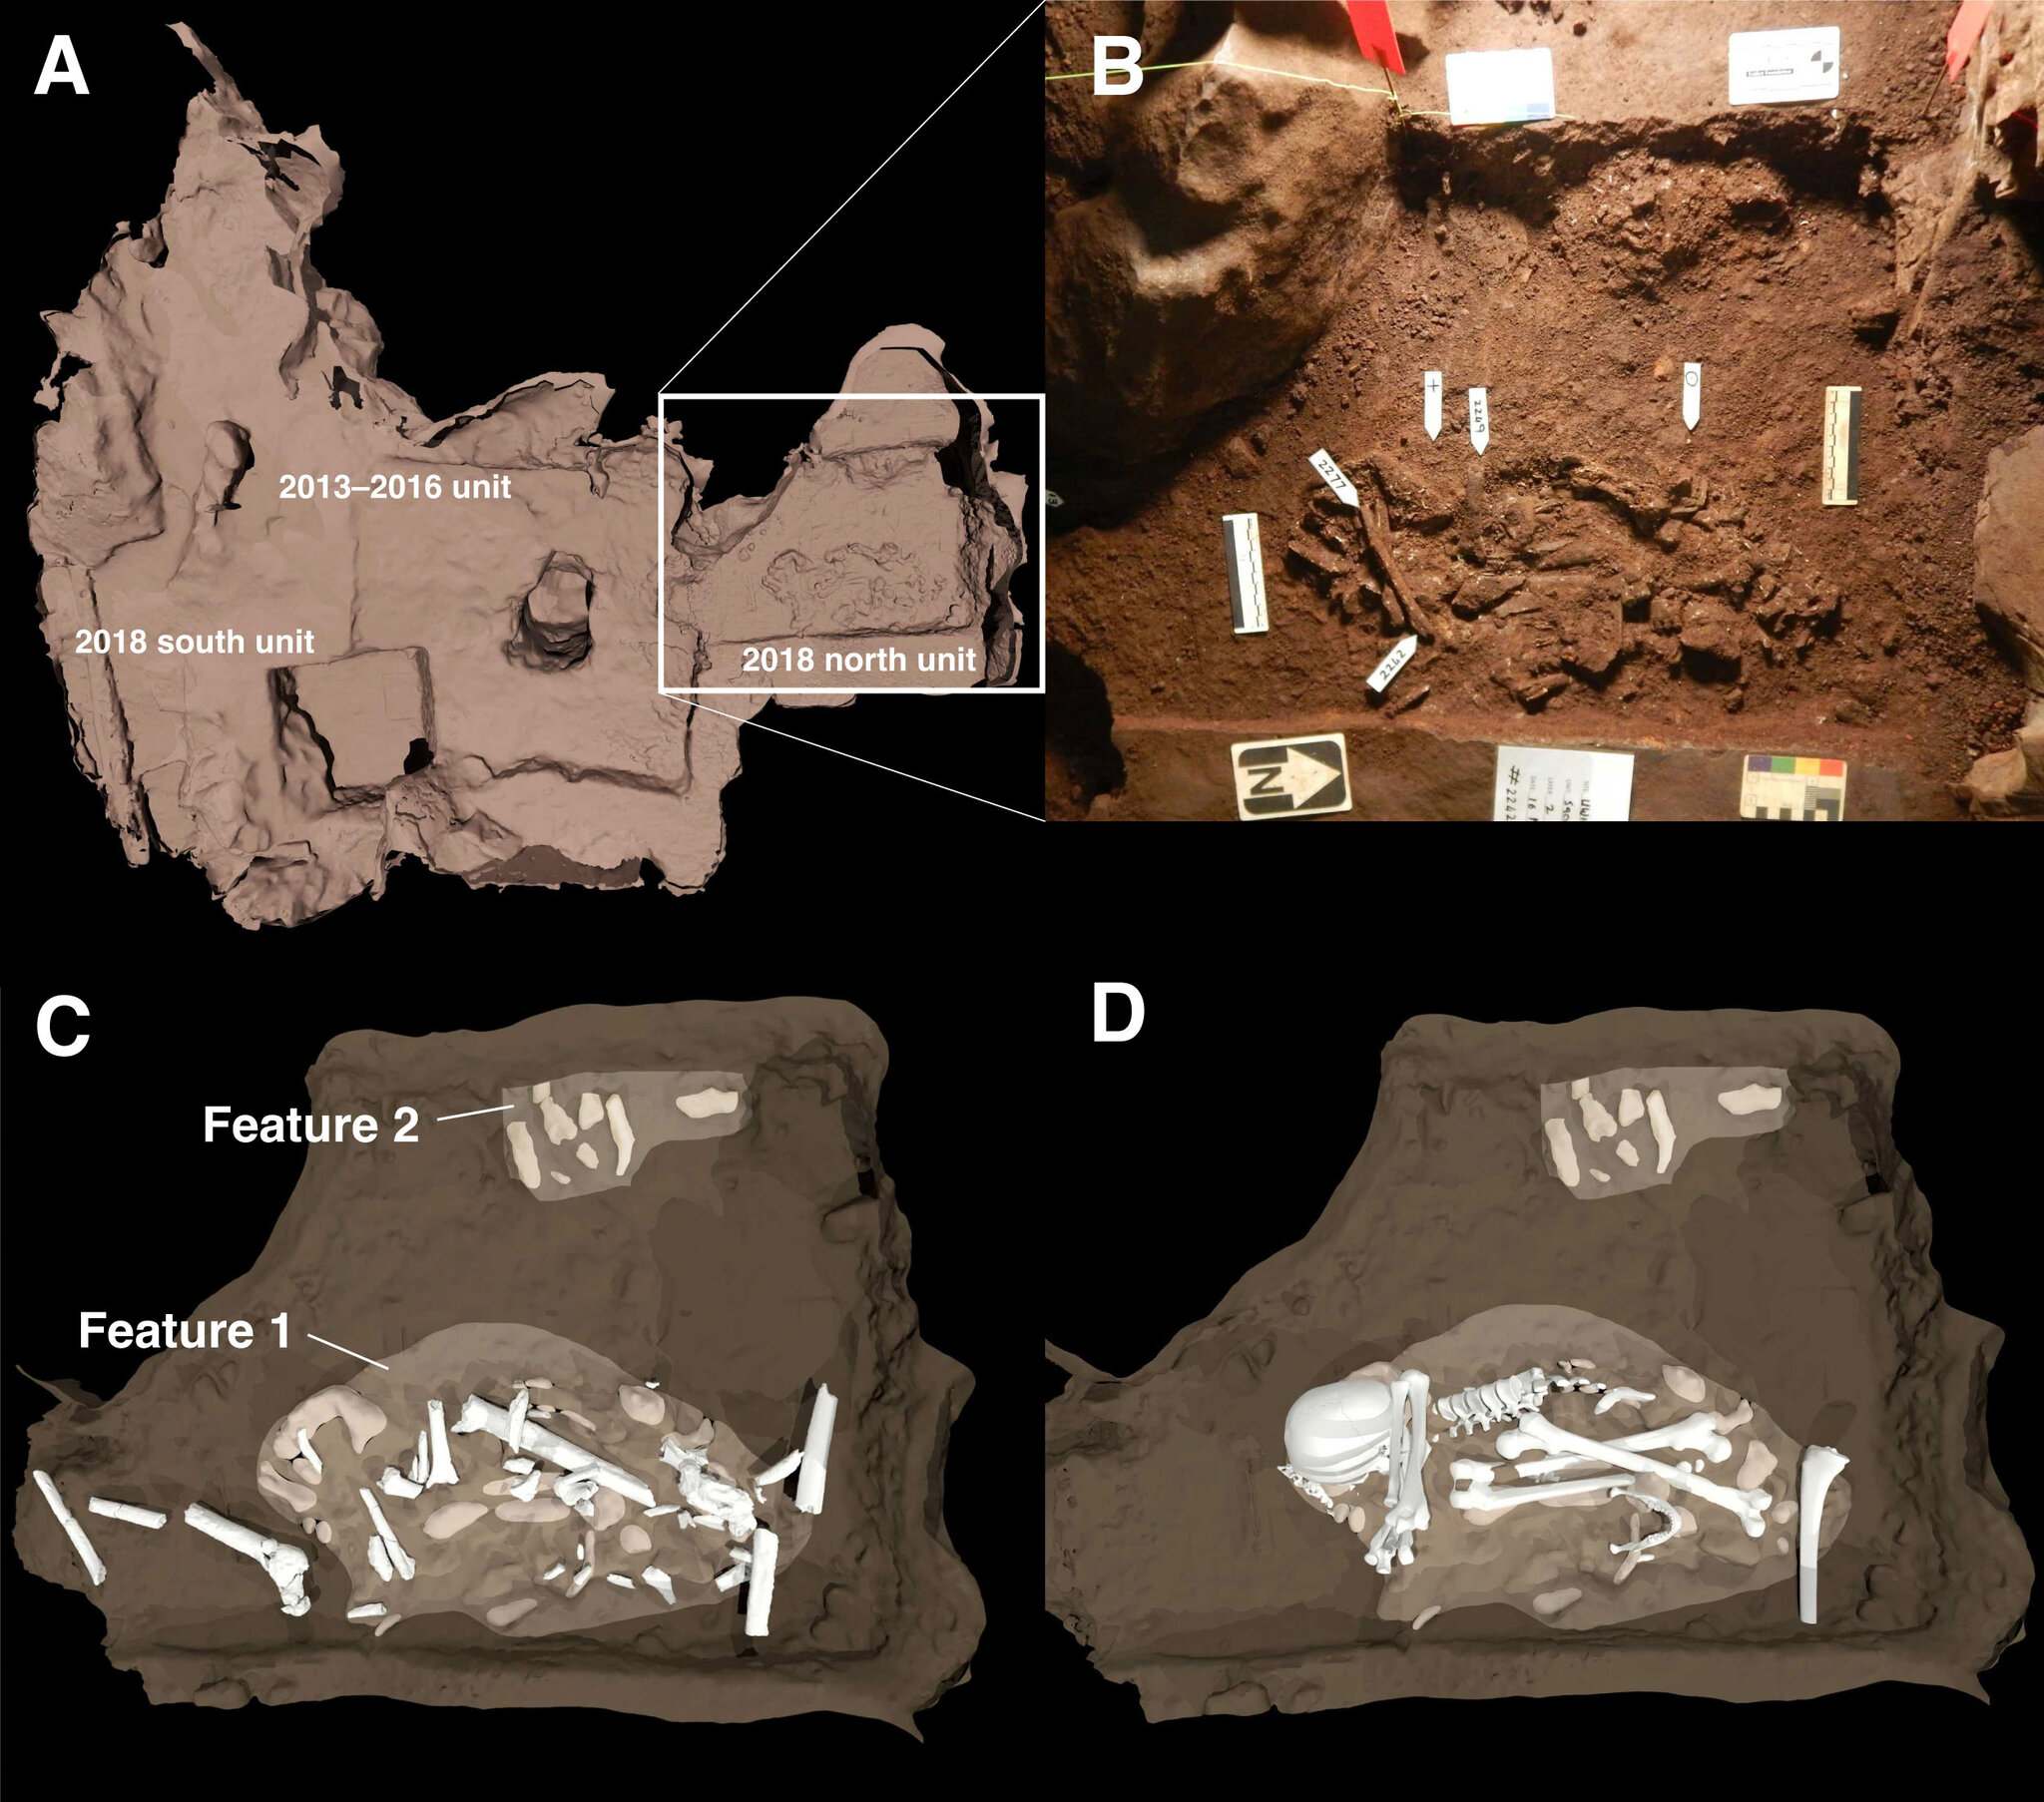 Një skemë e dy veçorive të varrimit që u zbuluan në dhomën e Dinaledit të Shpellës së Yllit në Ngritje. (A) Pozicioni i varrimeve në lidhje me gërmimet 2013–2016 përvijohet sipas sipërfaqes katrore. (B) Kjo është një fotografi e karakteristikave kryesore të varrimit. Tipari 1 është trupi i një ekzemplari të rritur Homo naledi. Karakteristika 2 tregon të paktën një trup të mitur në buzë të vendit të varrimit. (C) dhe (D) janë ilustrime që tregojnë se si ishin vendosur kockat brenda varreve.